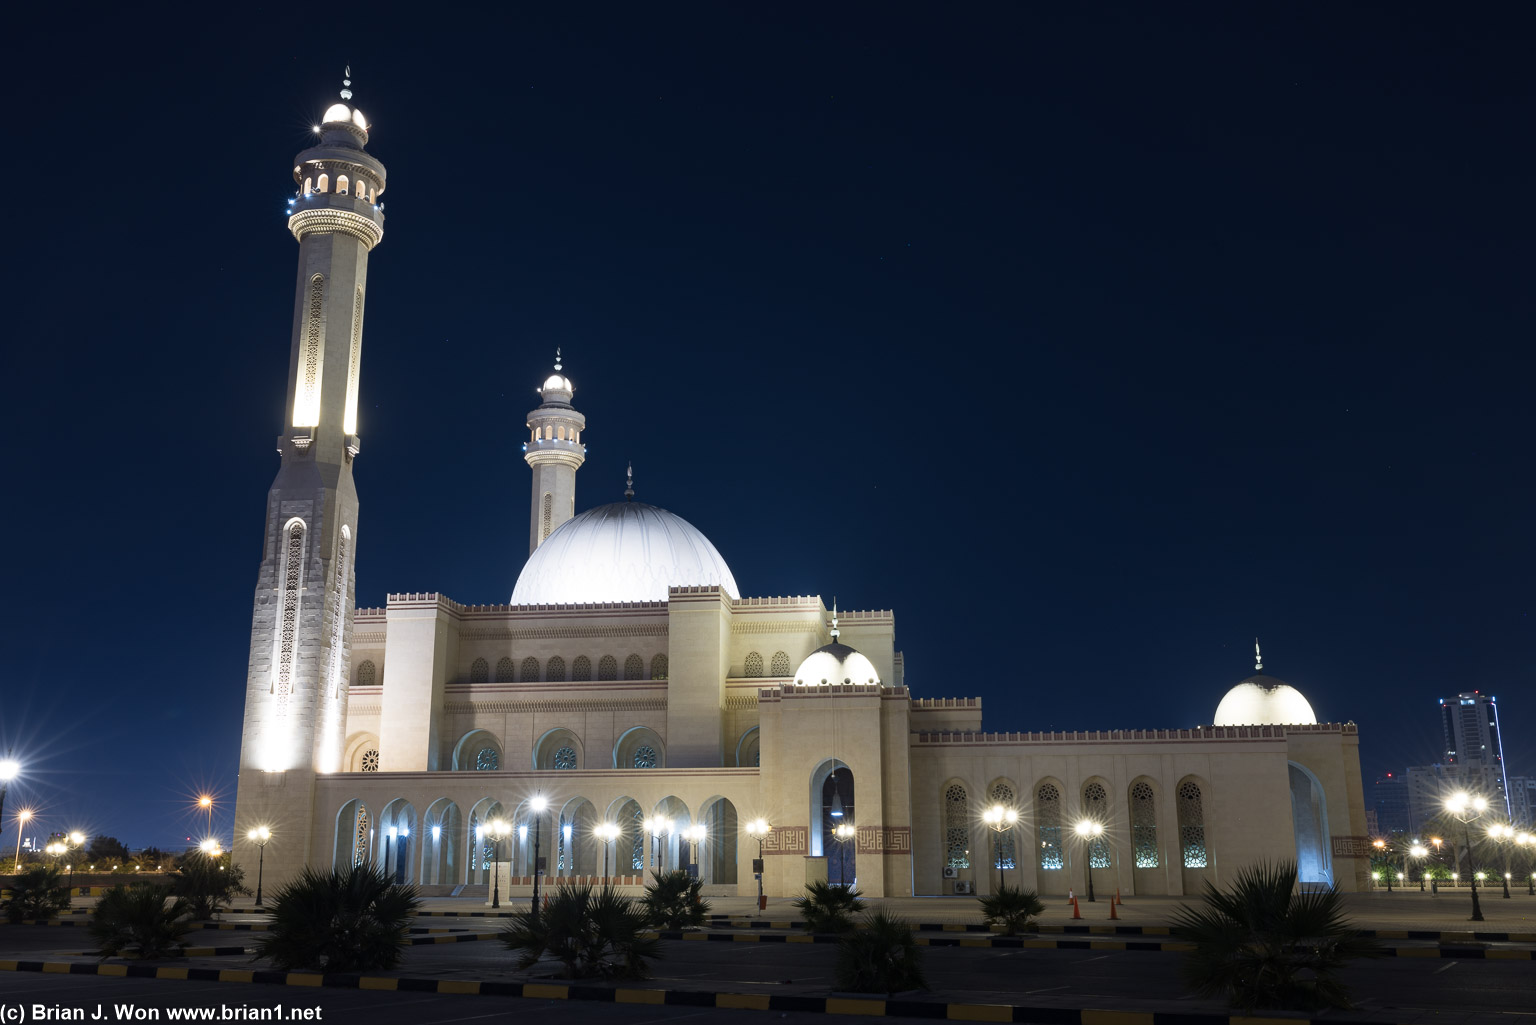 Al Fateh Grand Mosque at night.